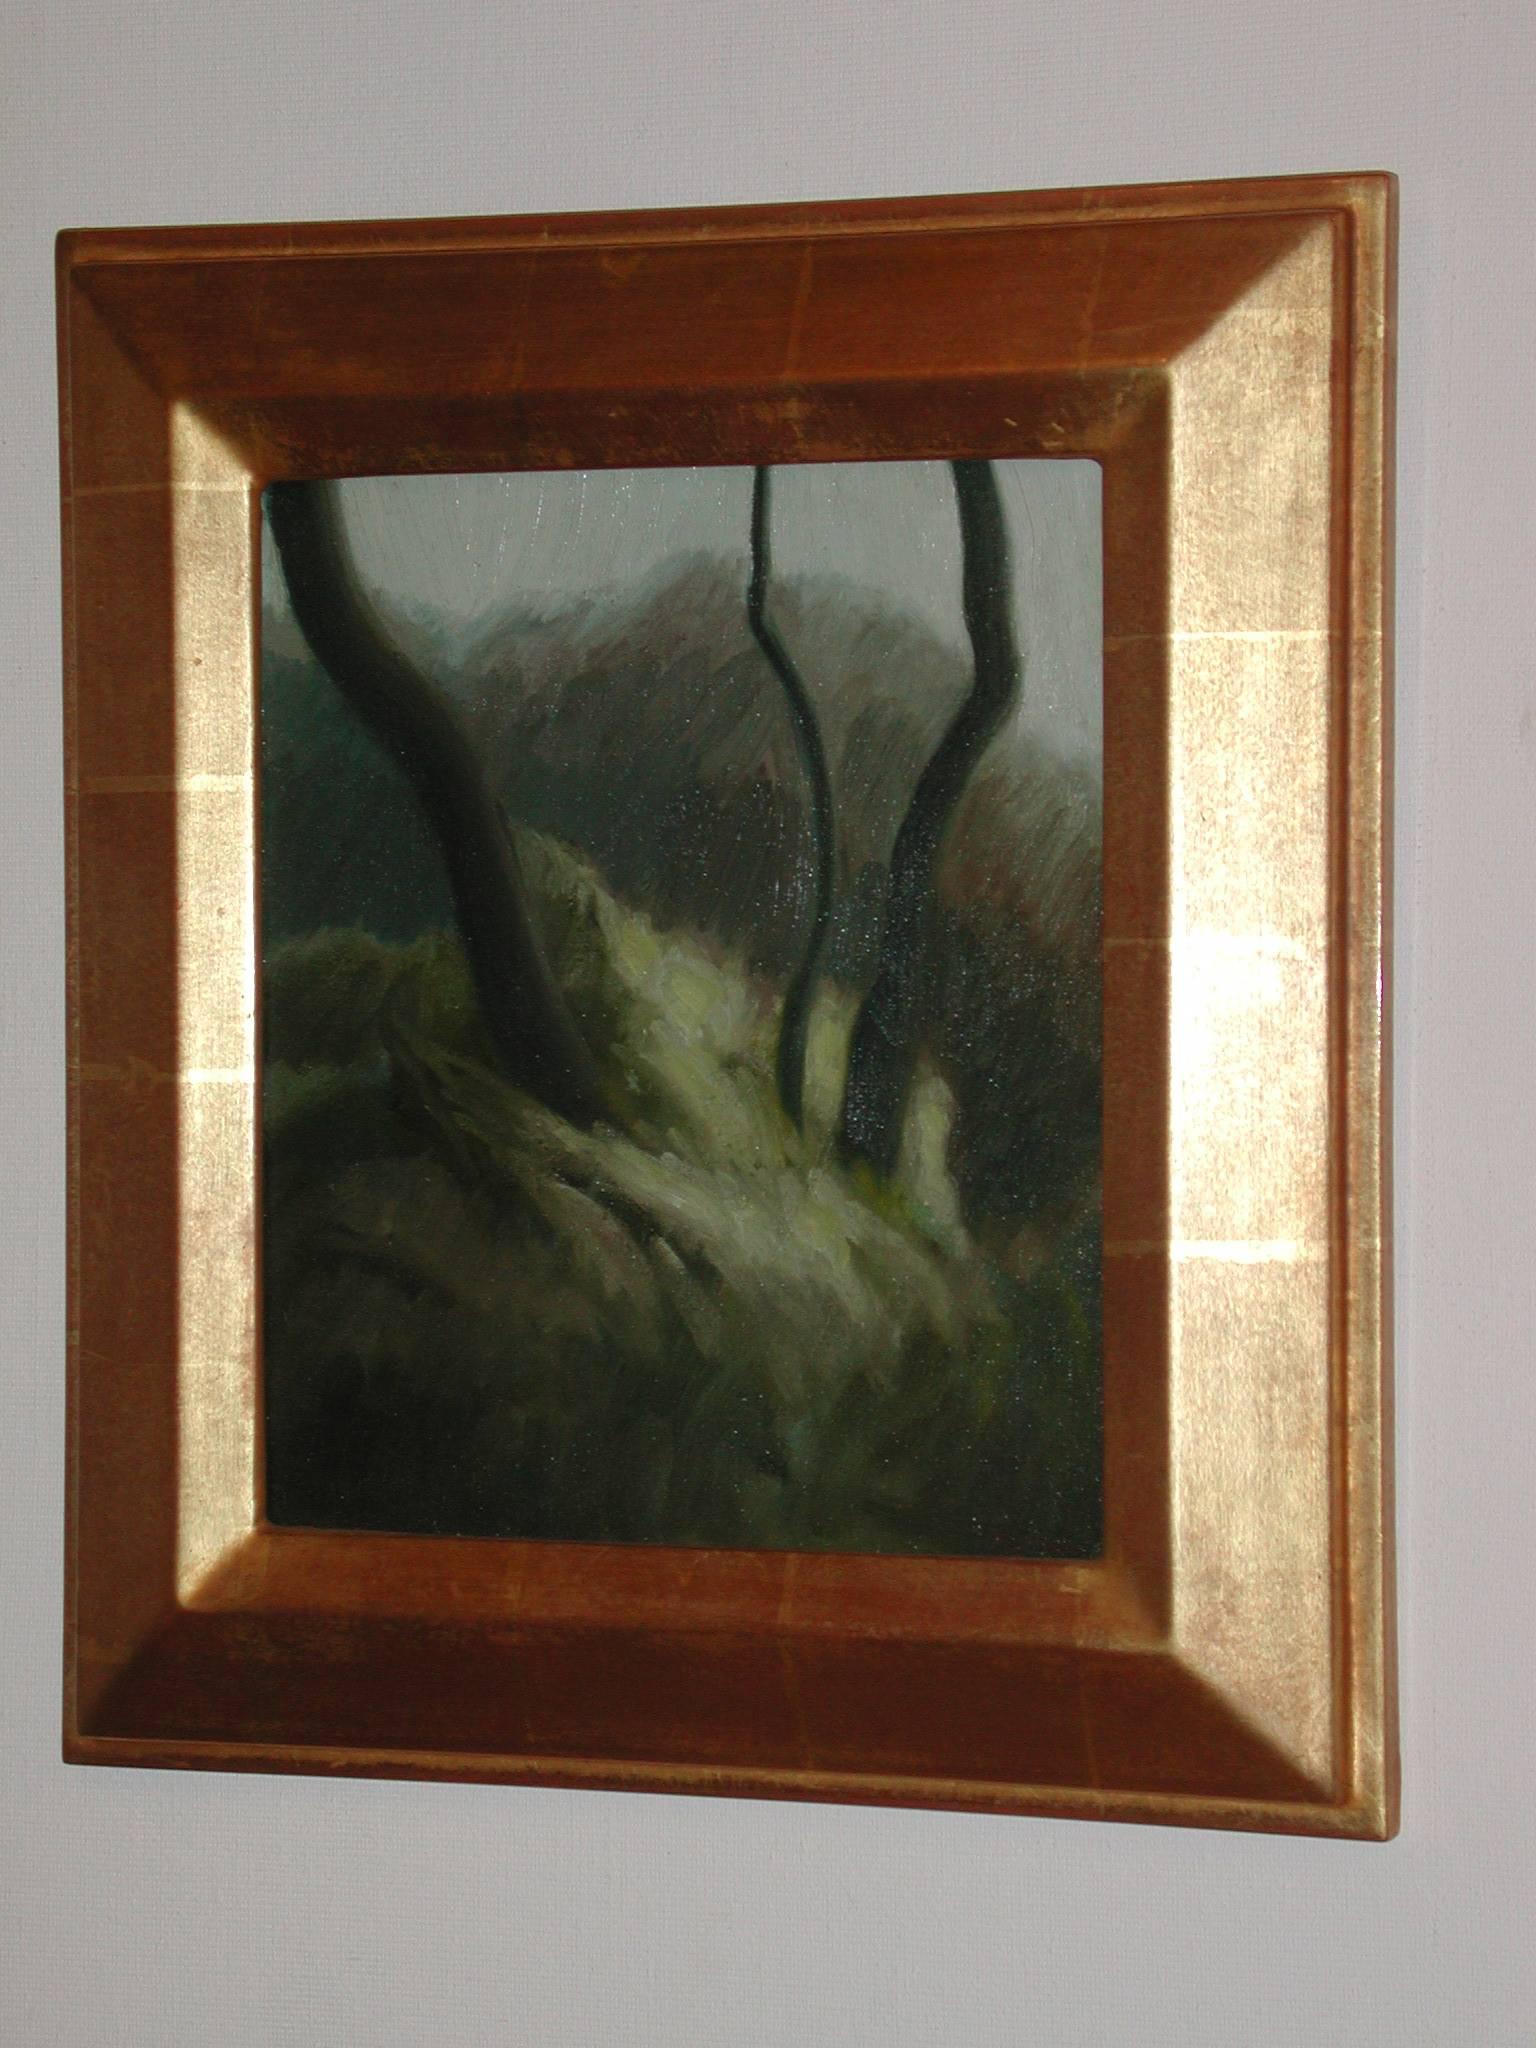 Oil on fabric, framed. 12